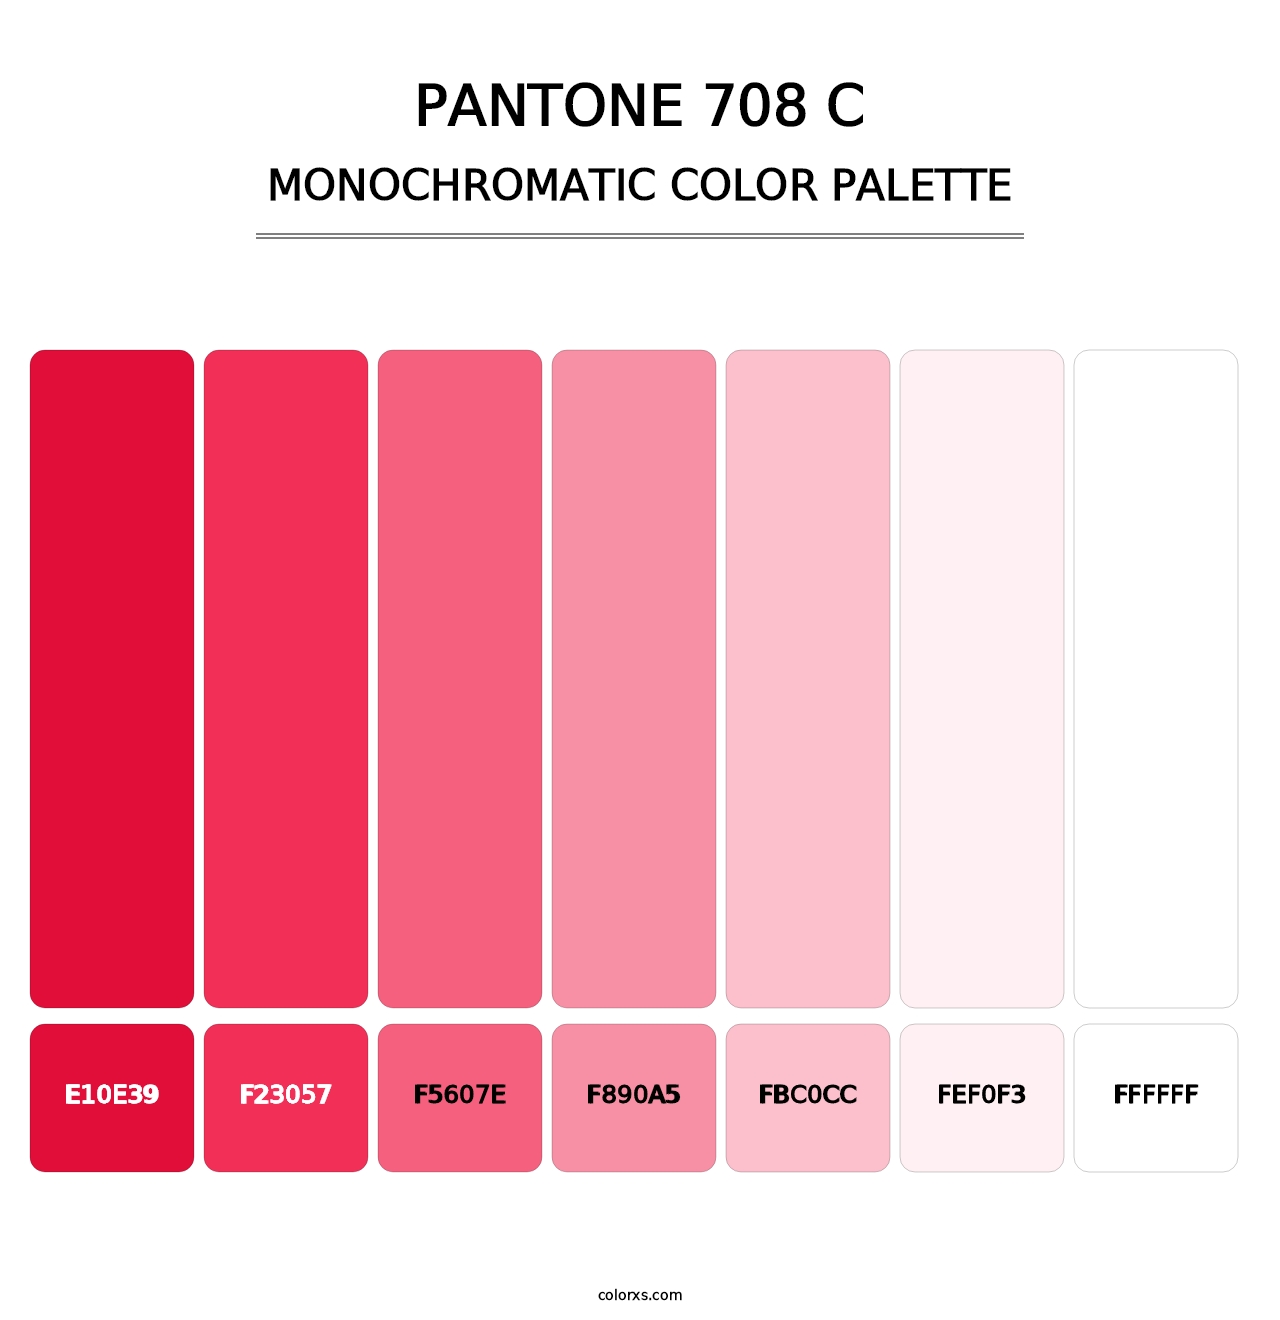 PANTONE 708 C - Monochromatic Color Palette